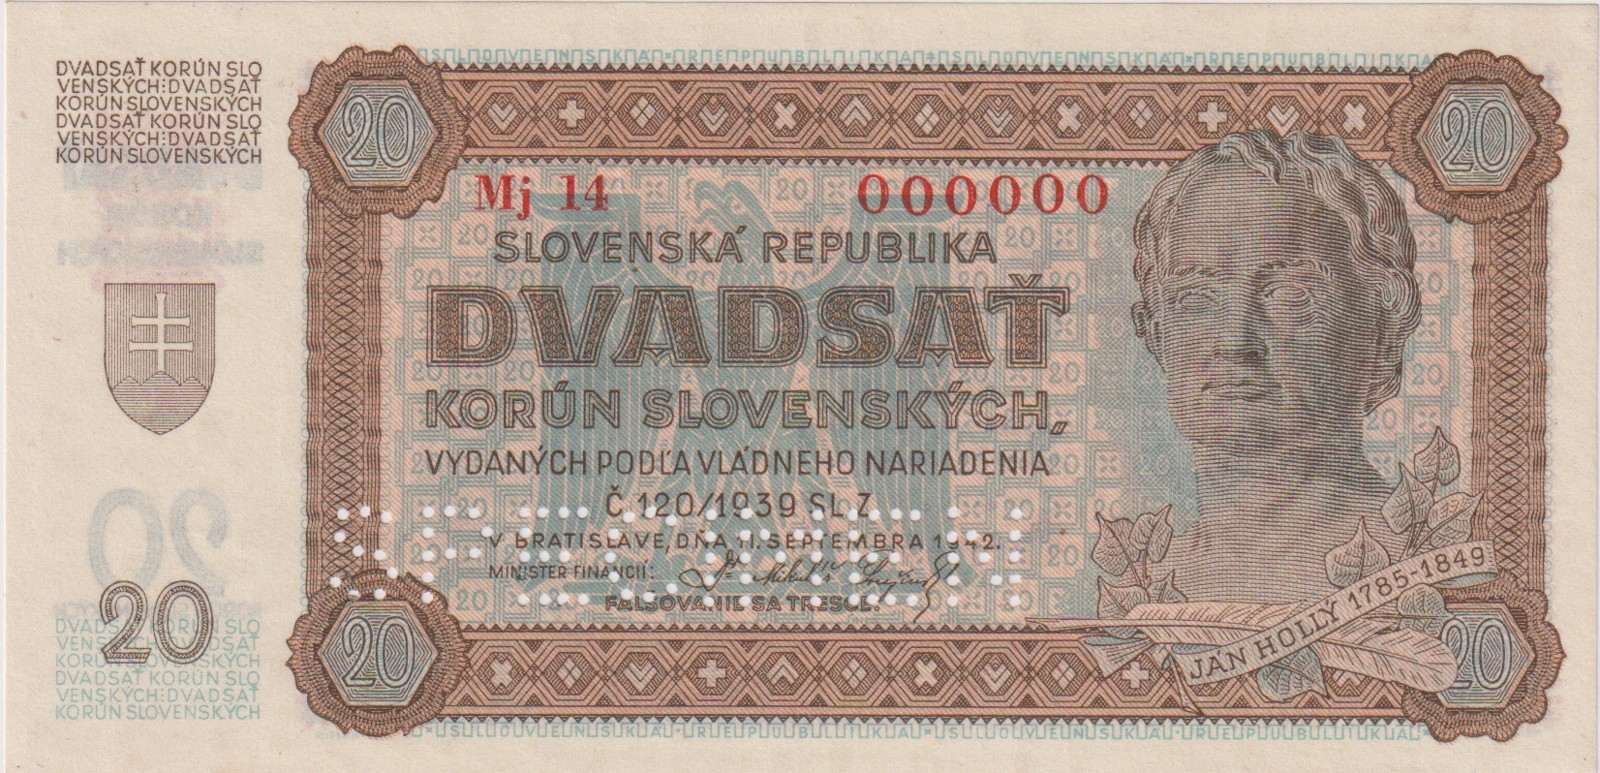 Slovenský stát, 1939 - 1945